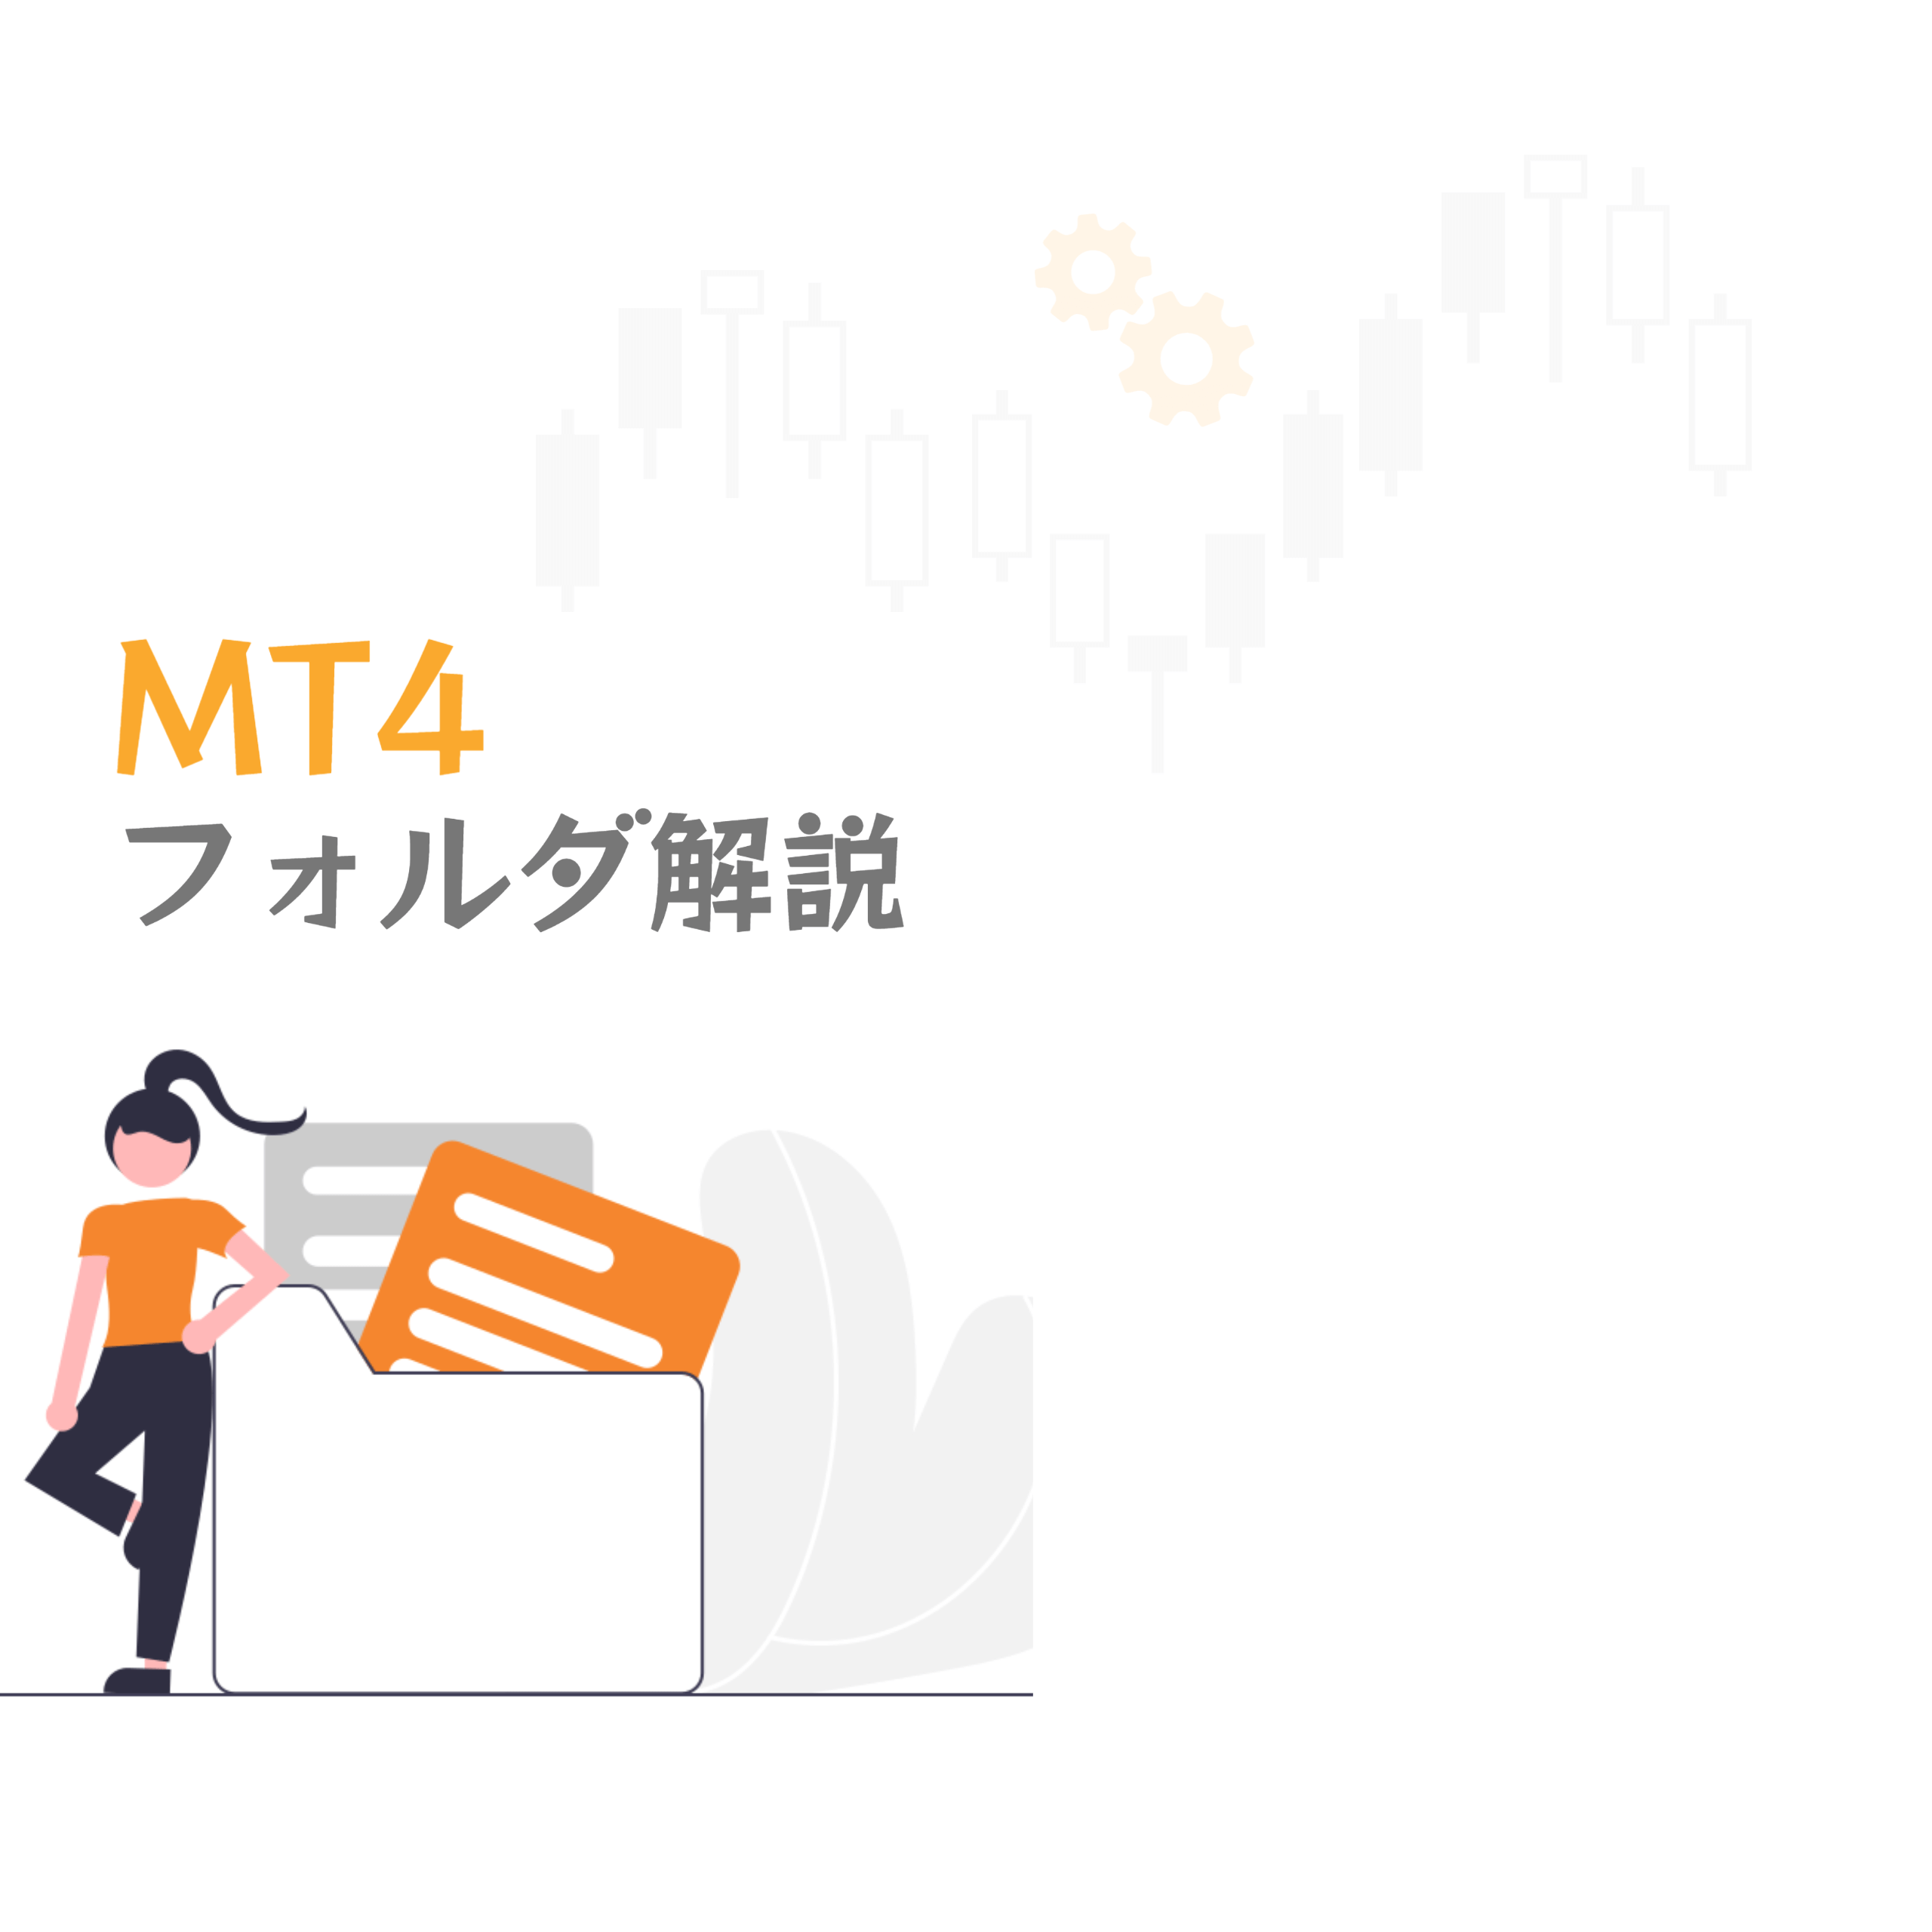 MT4フォルダ解説アイキャッチ